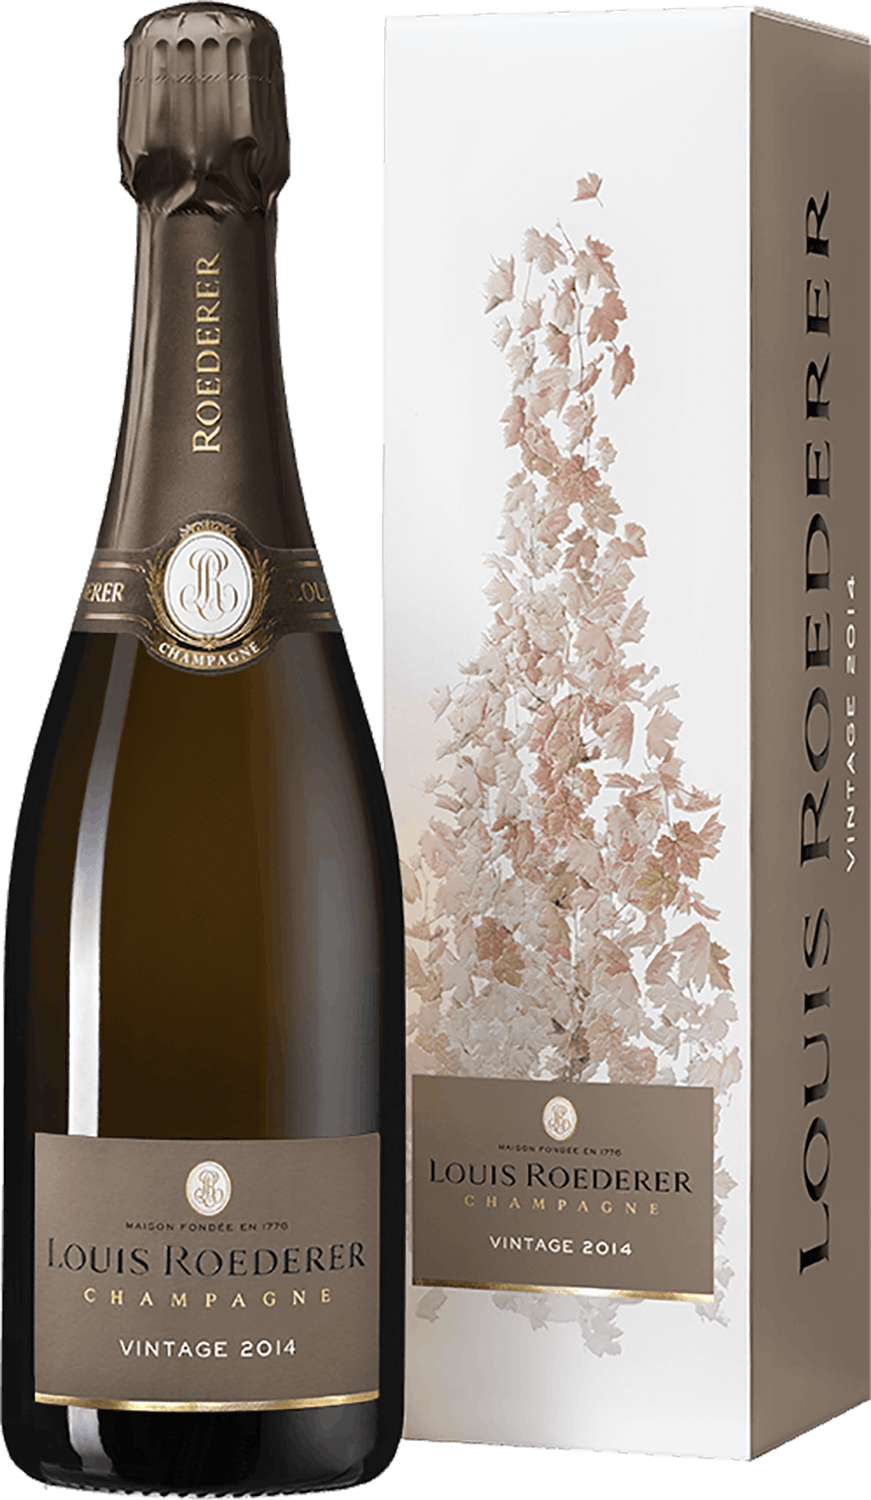 Vintage Brut Champagne AOC Louis Roederer (gift box) brut premiere champagne aoc louis roederer